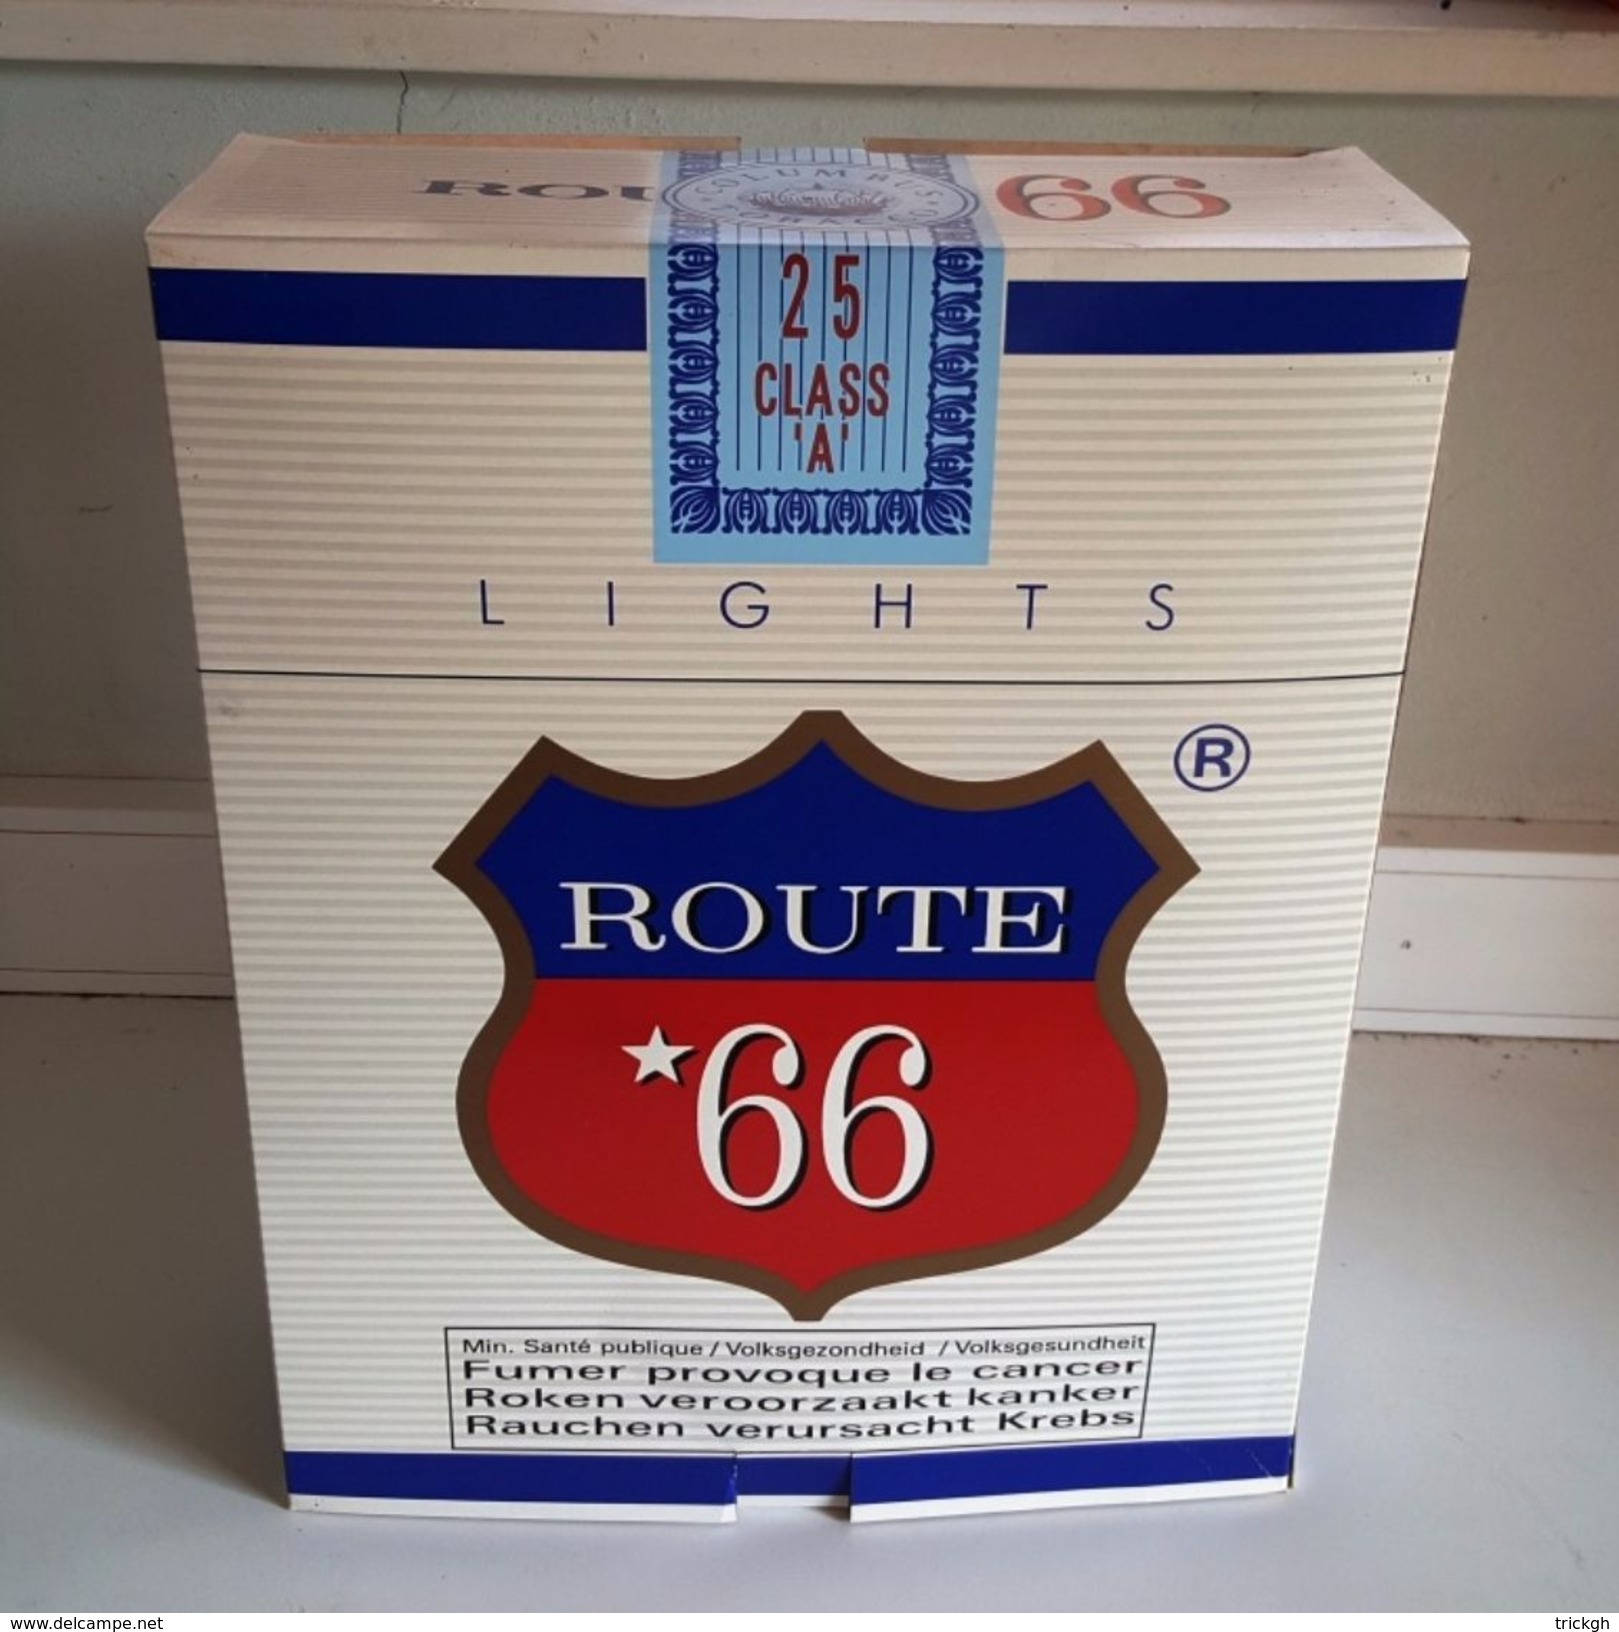 Grote Publidoos Sigaretten Route 66 - Objets Publicitaires